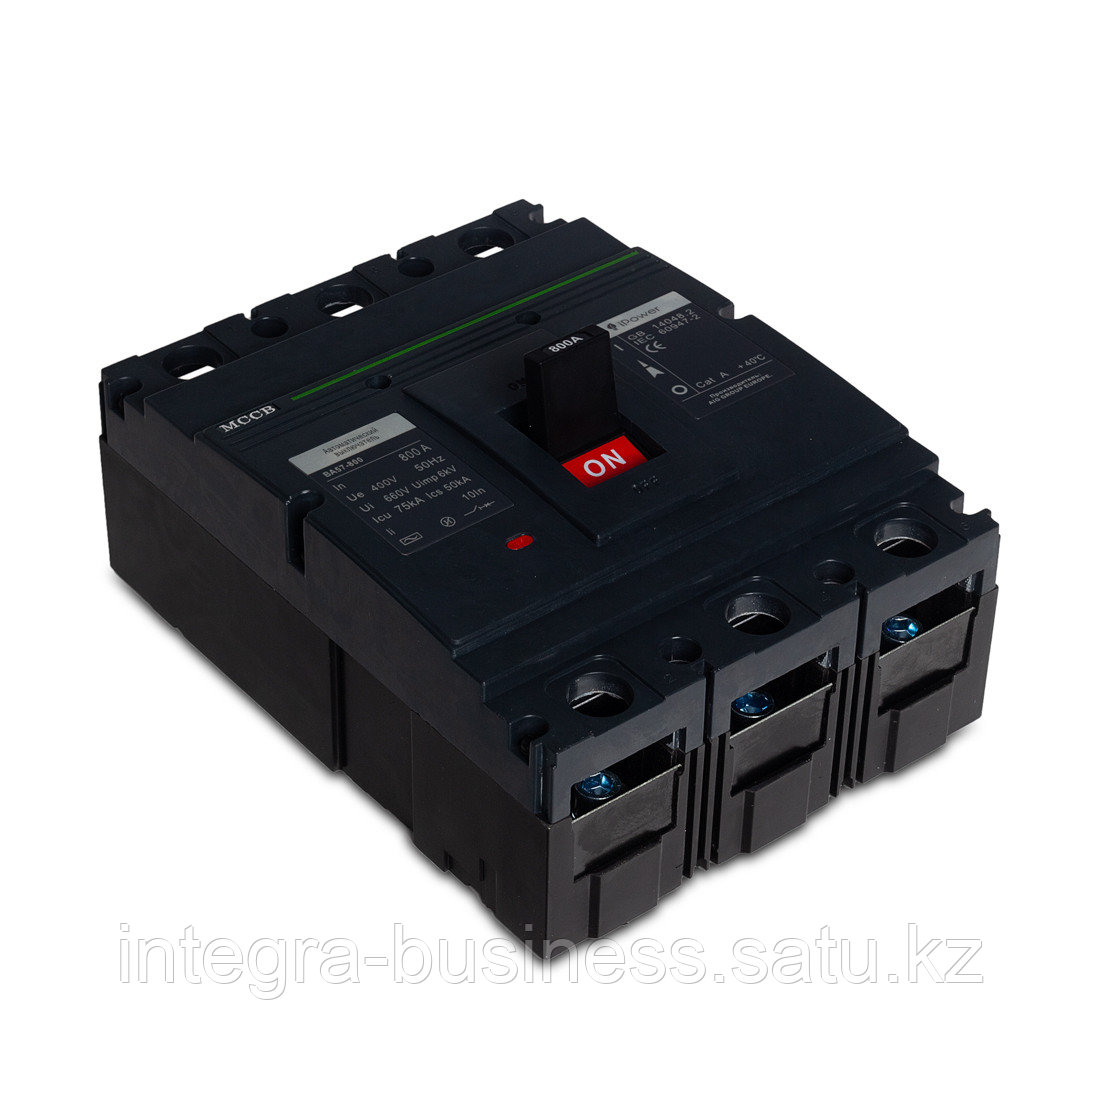 Автоматический выключатель iPower ВА57-800 3P 800A